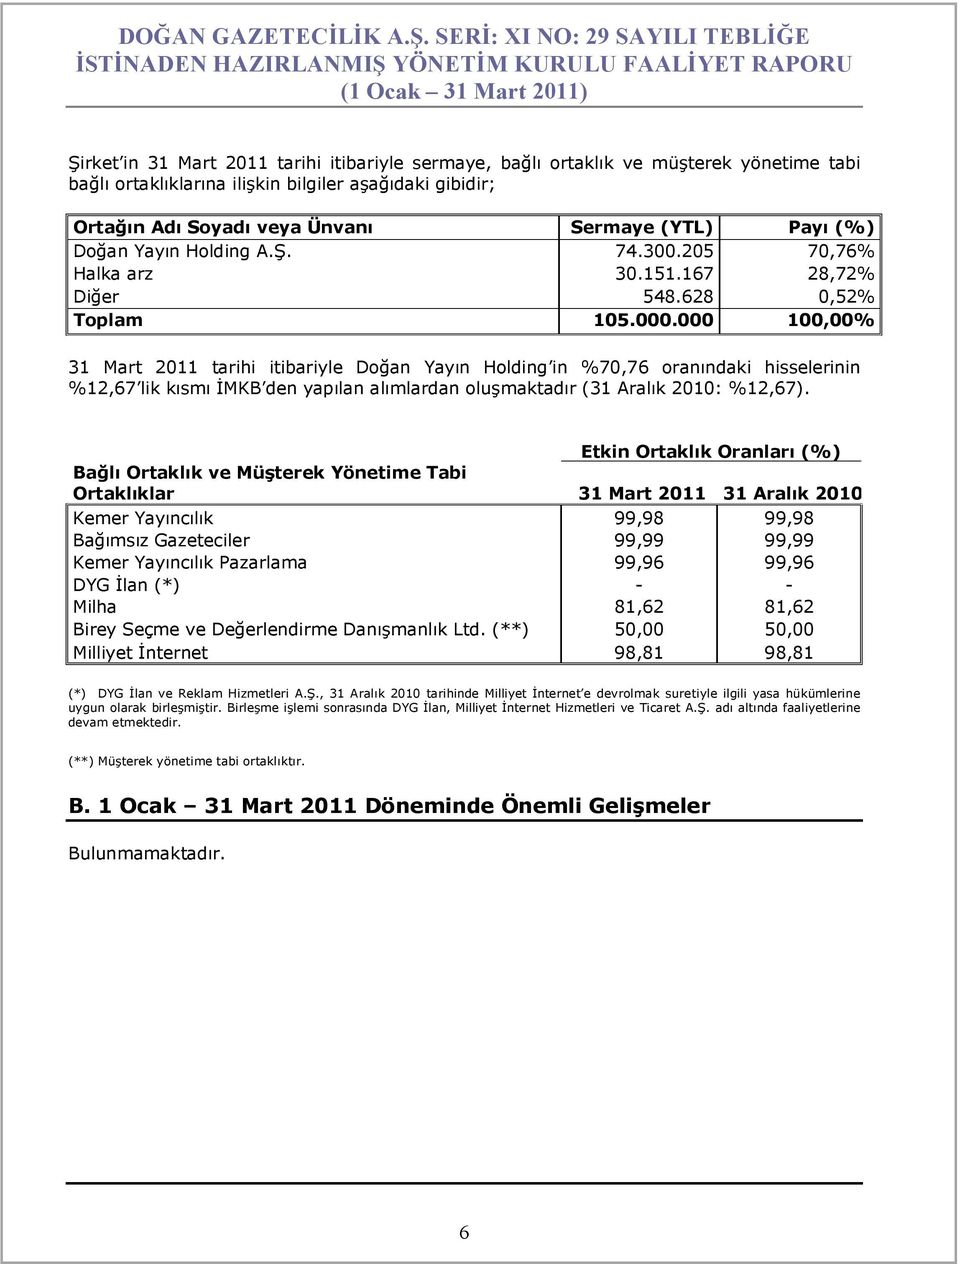 000 100,00% 31 Mart 2011 tarihi itibariyle Doğan Yayın Holding in %70,76 oranındaki hisselerinin %12,67 lik kısmı İMKB den yapılan alımlardan oluşmaktadır (31 Aralık 2010: %12,67).